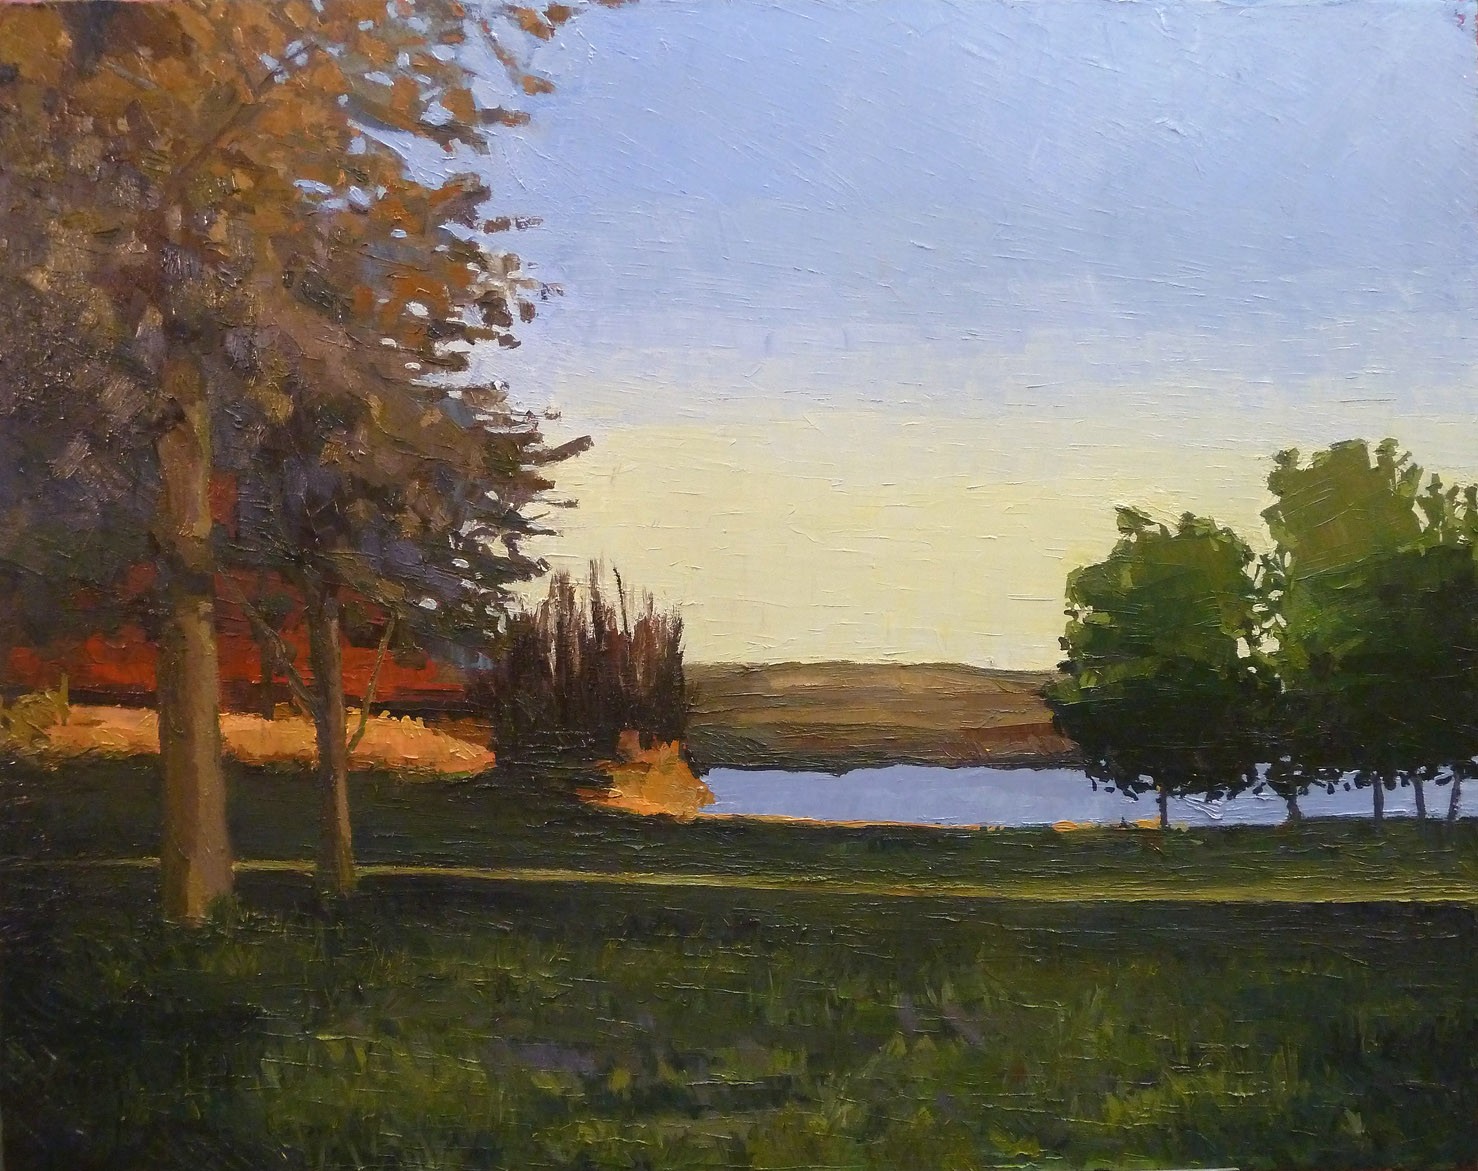 Lake Anita at Sunset